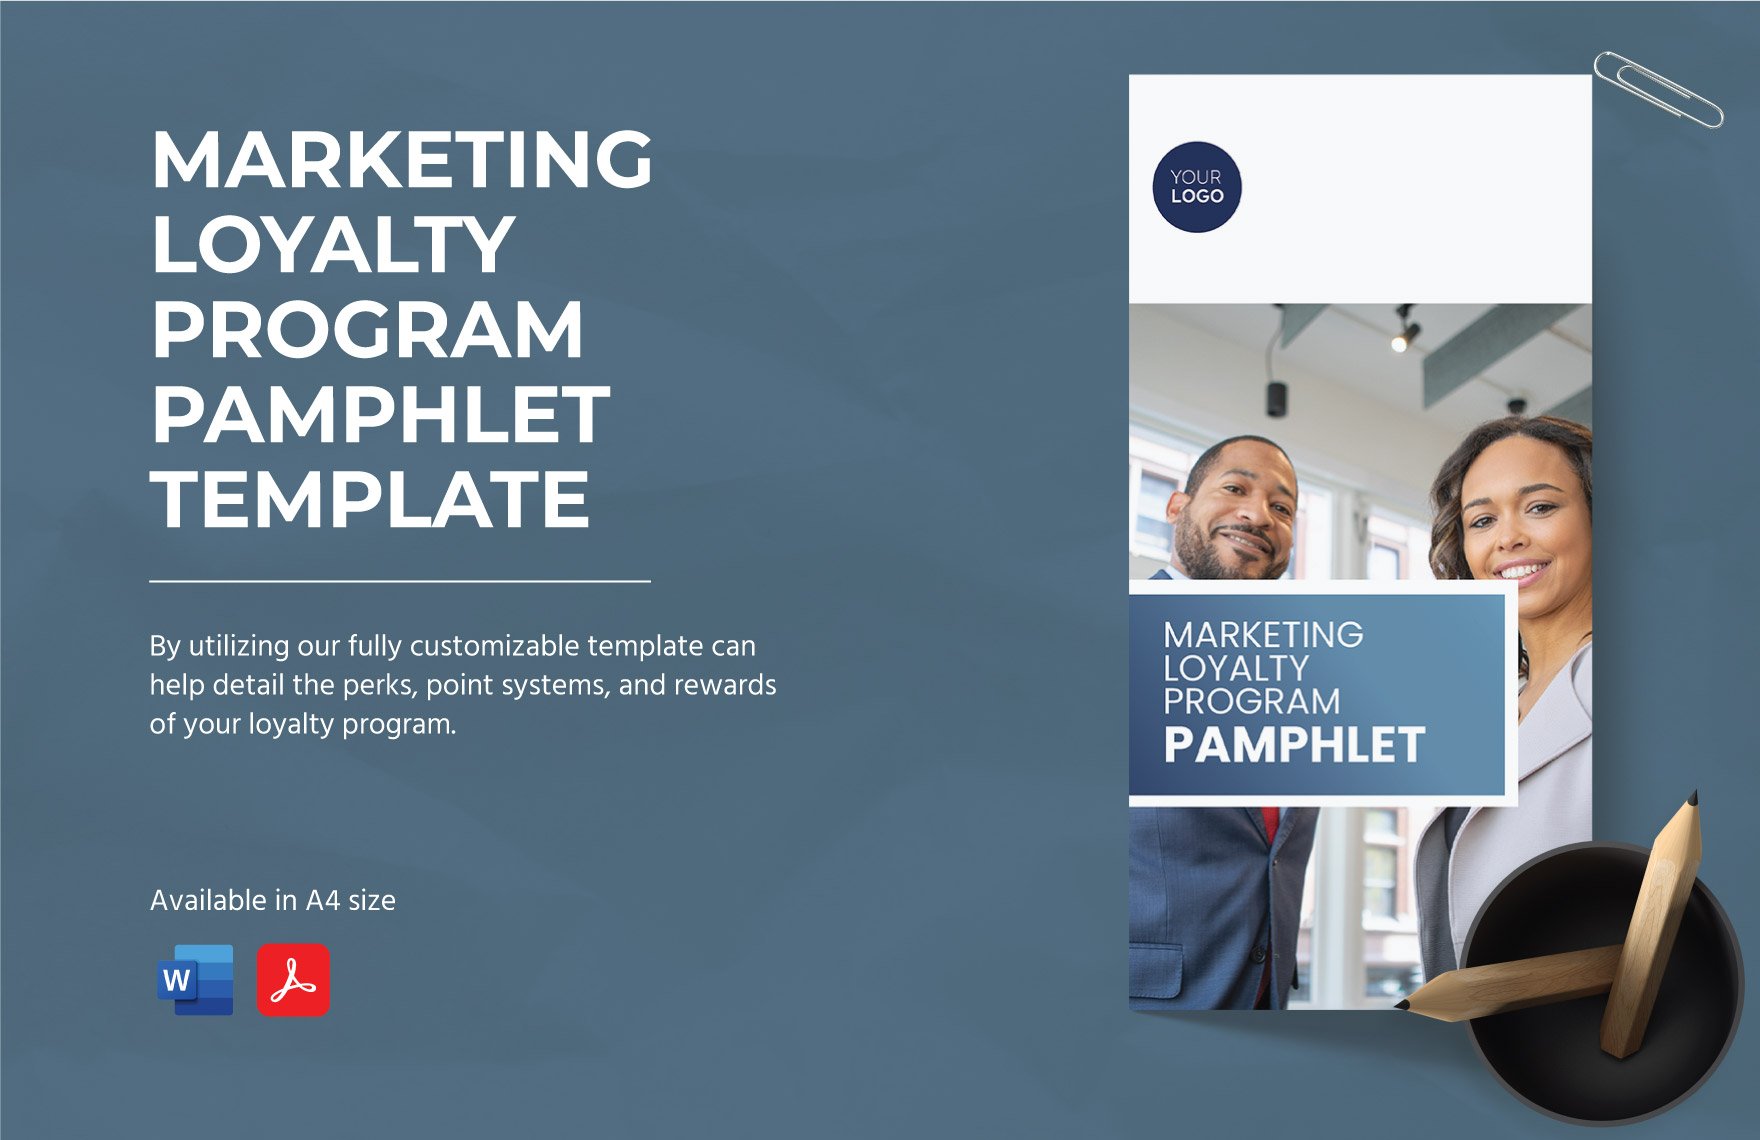 Marketing Loyalty Program Pamphlet Template